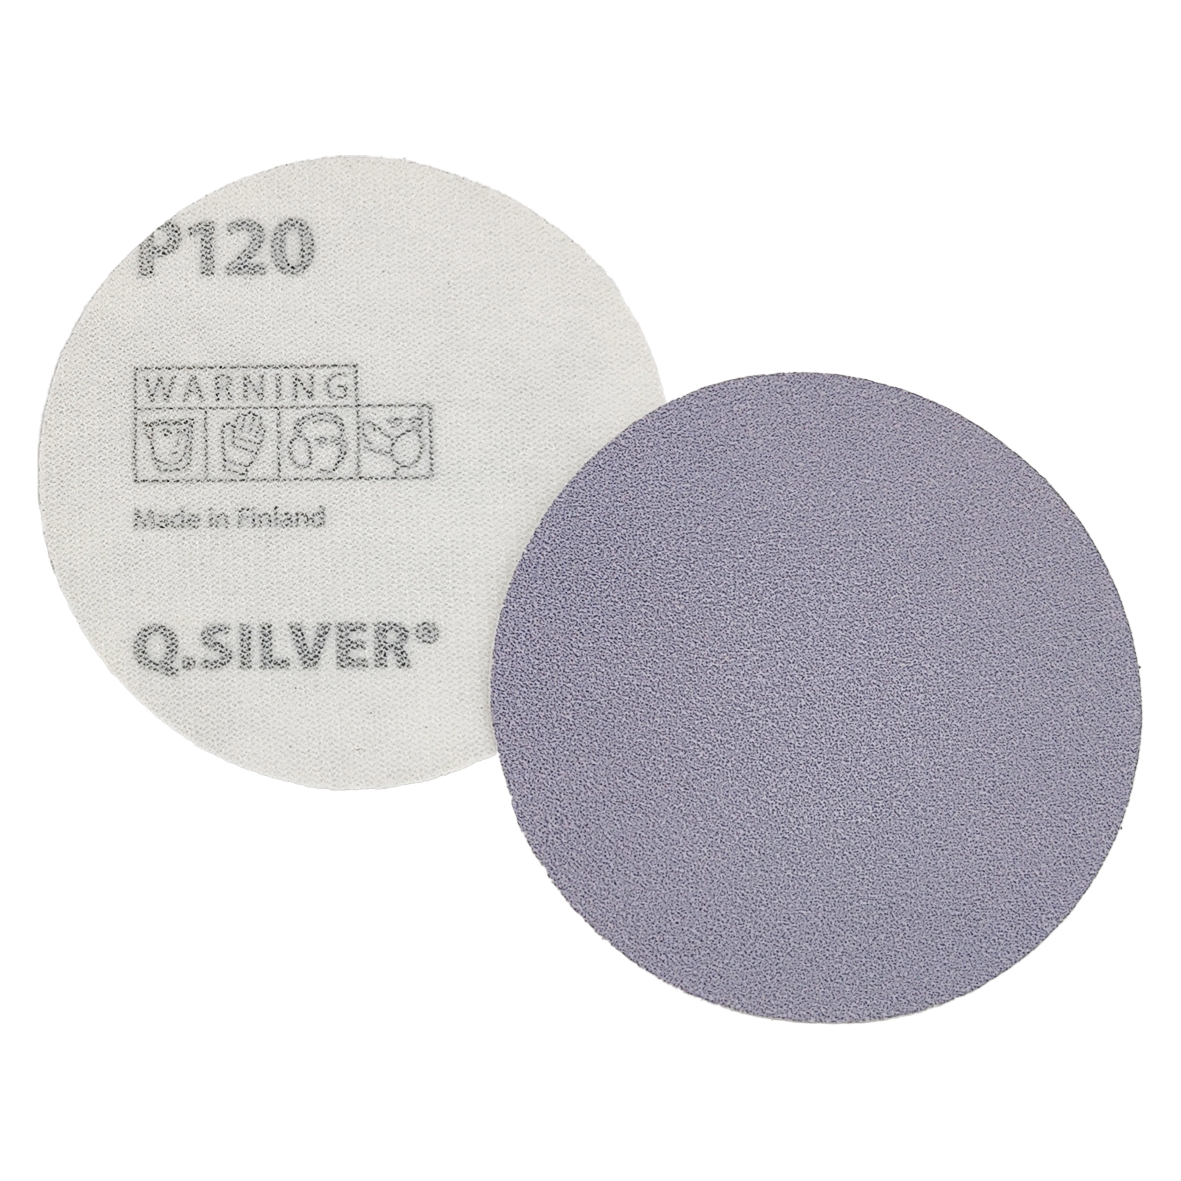 Abbildung Mirka Q.Silver 77mm Scheiben Vorder- und Rückseite.